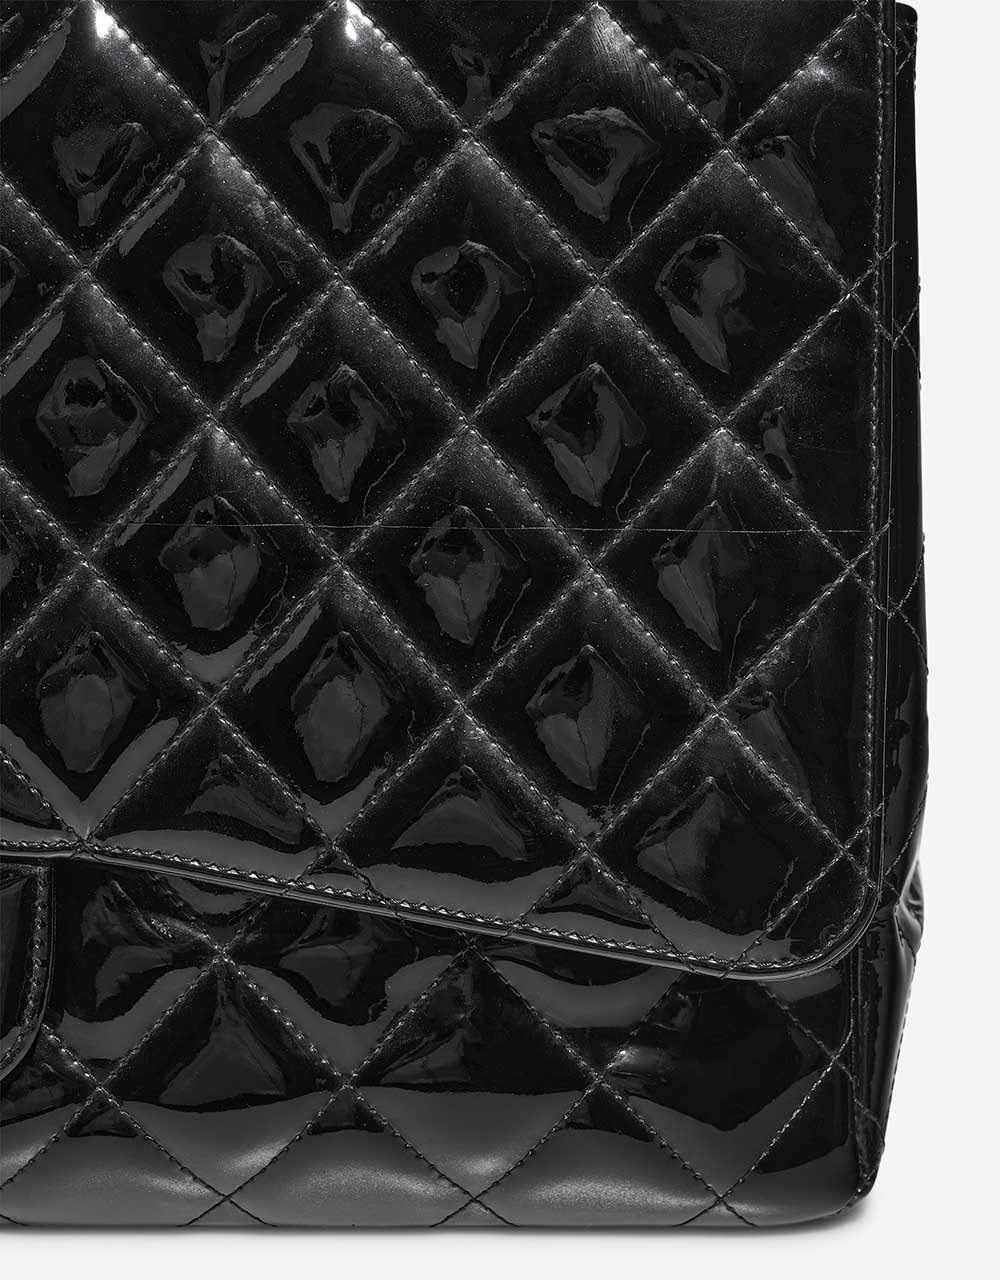 Chanel Timeless Maxi Schwarz Gebrauchsspuren 1 | Verkaufen Sie Ihre Designertasche auf Saclab.com